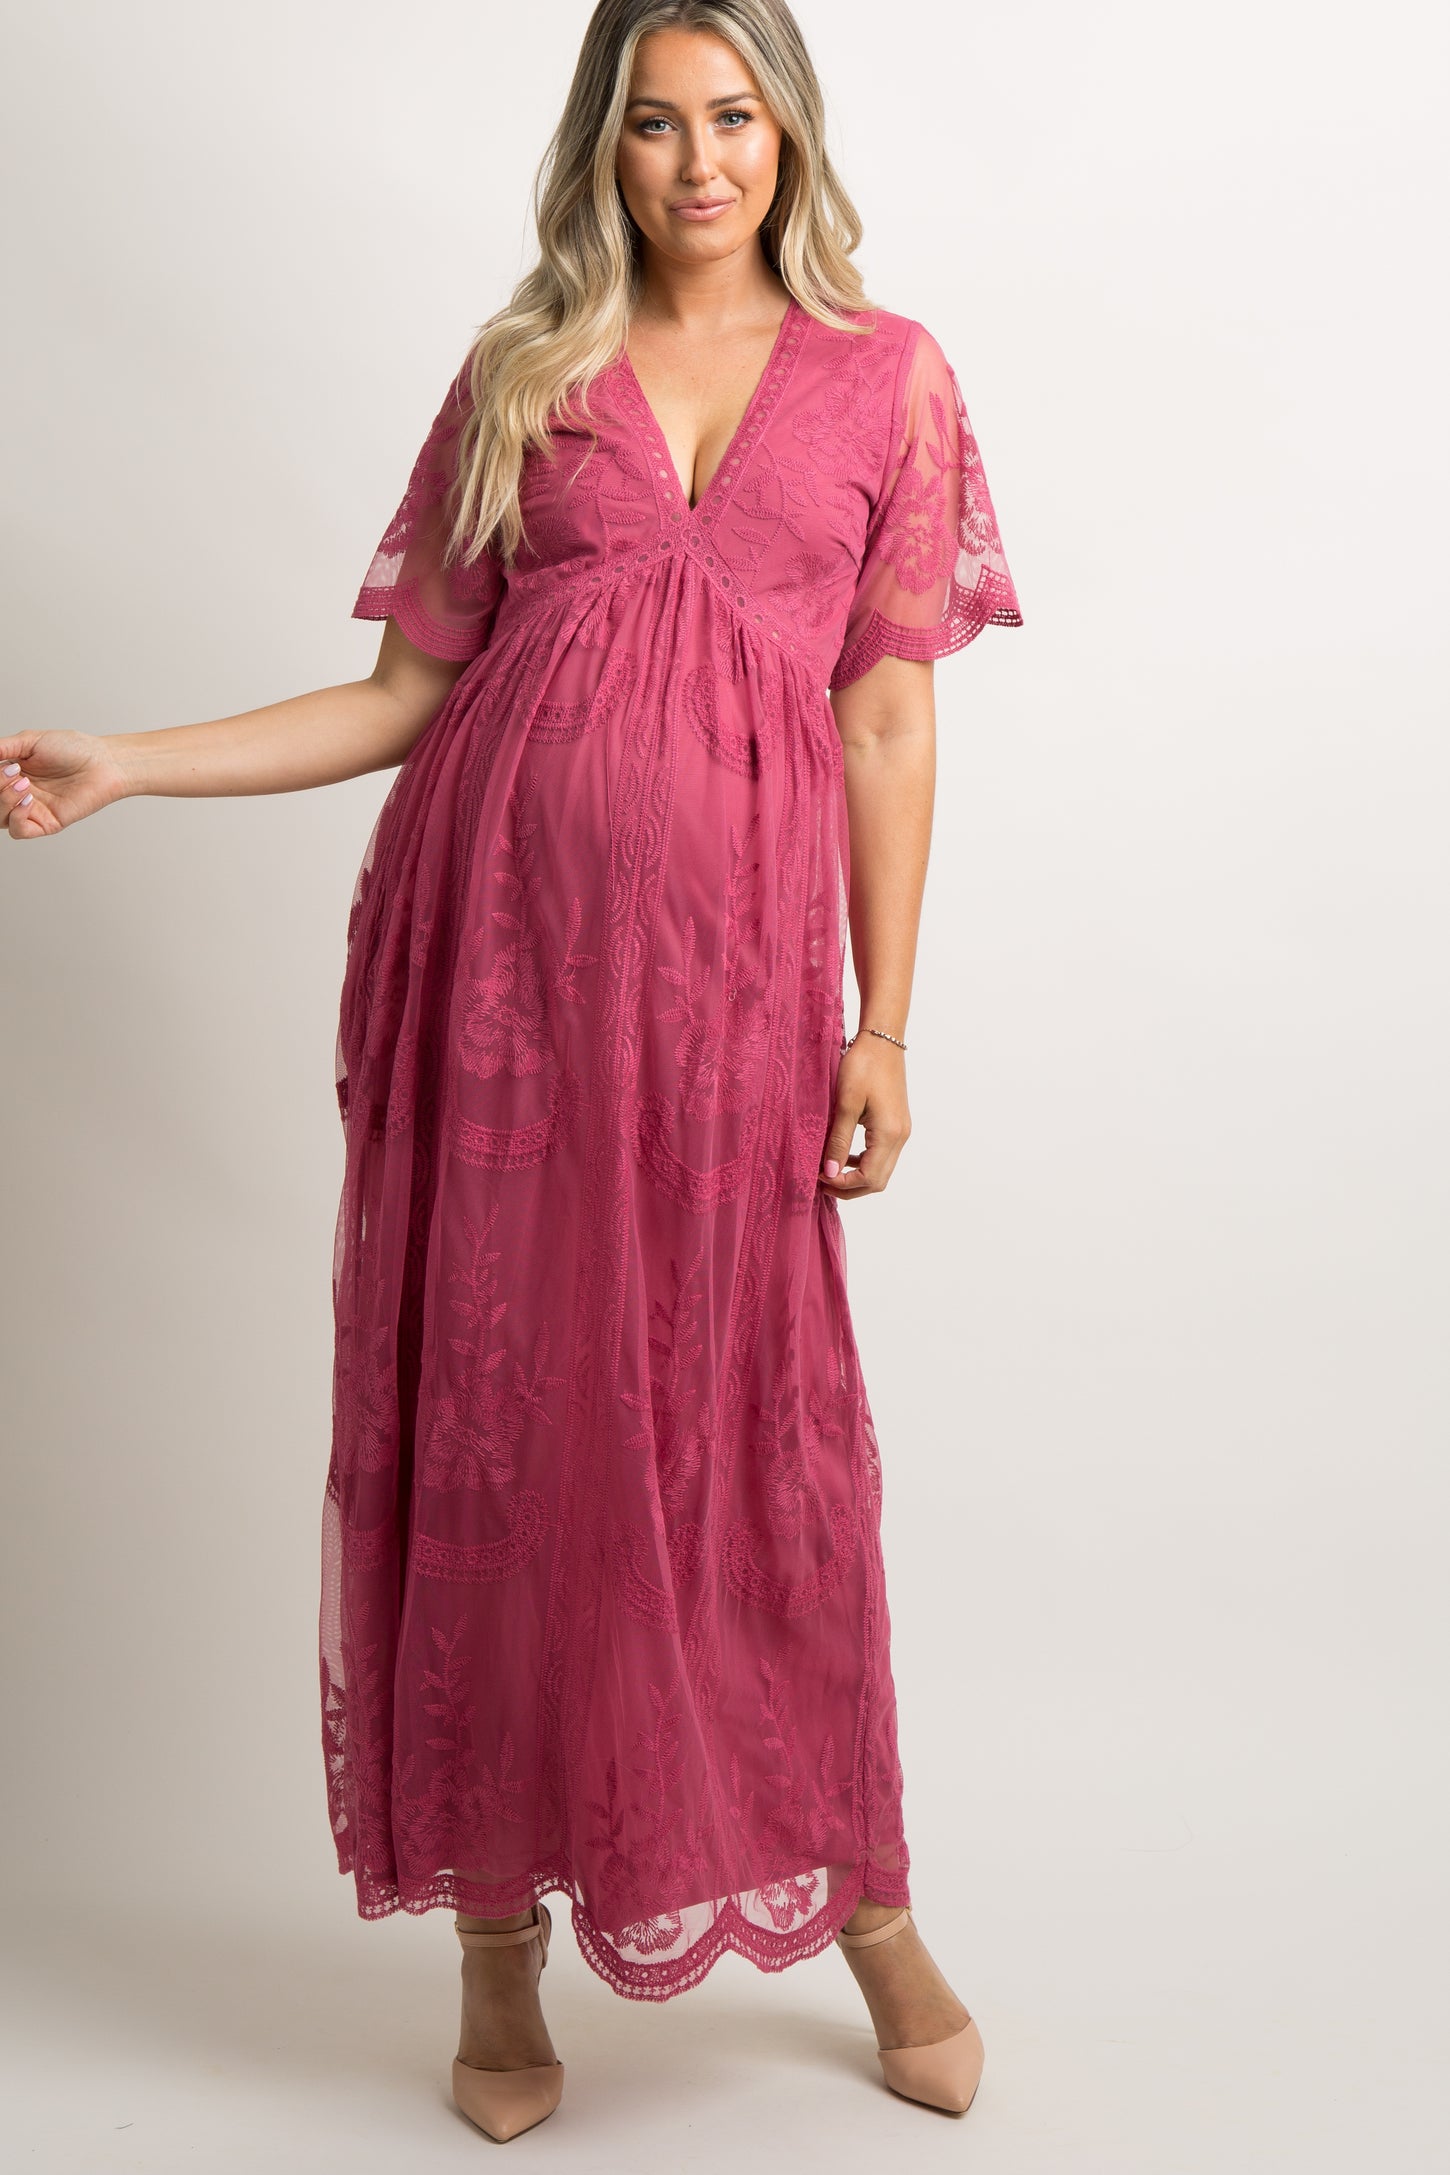 PinkBlush Black Lace Mesh Overlay Maternity Maxi Dress